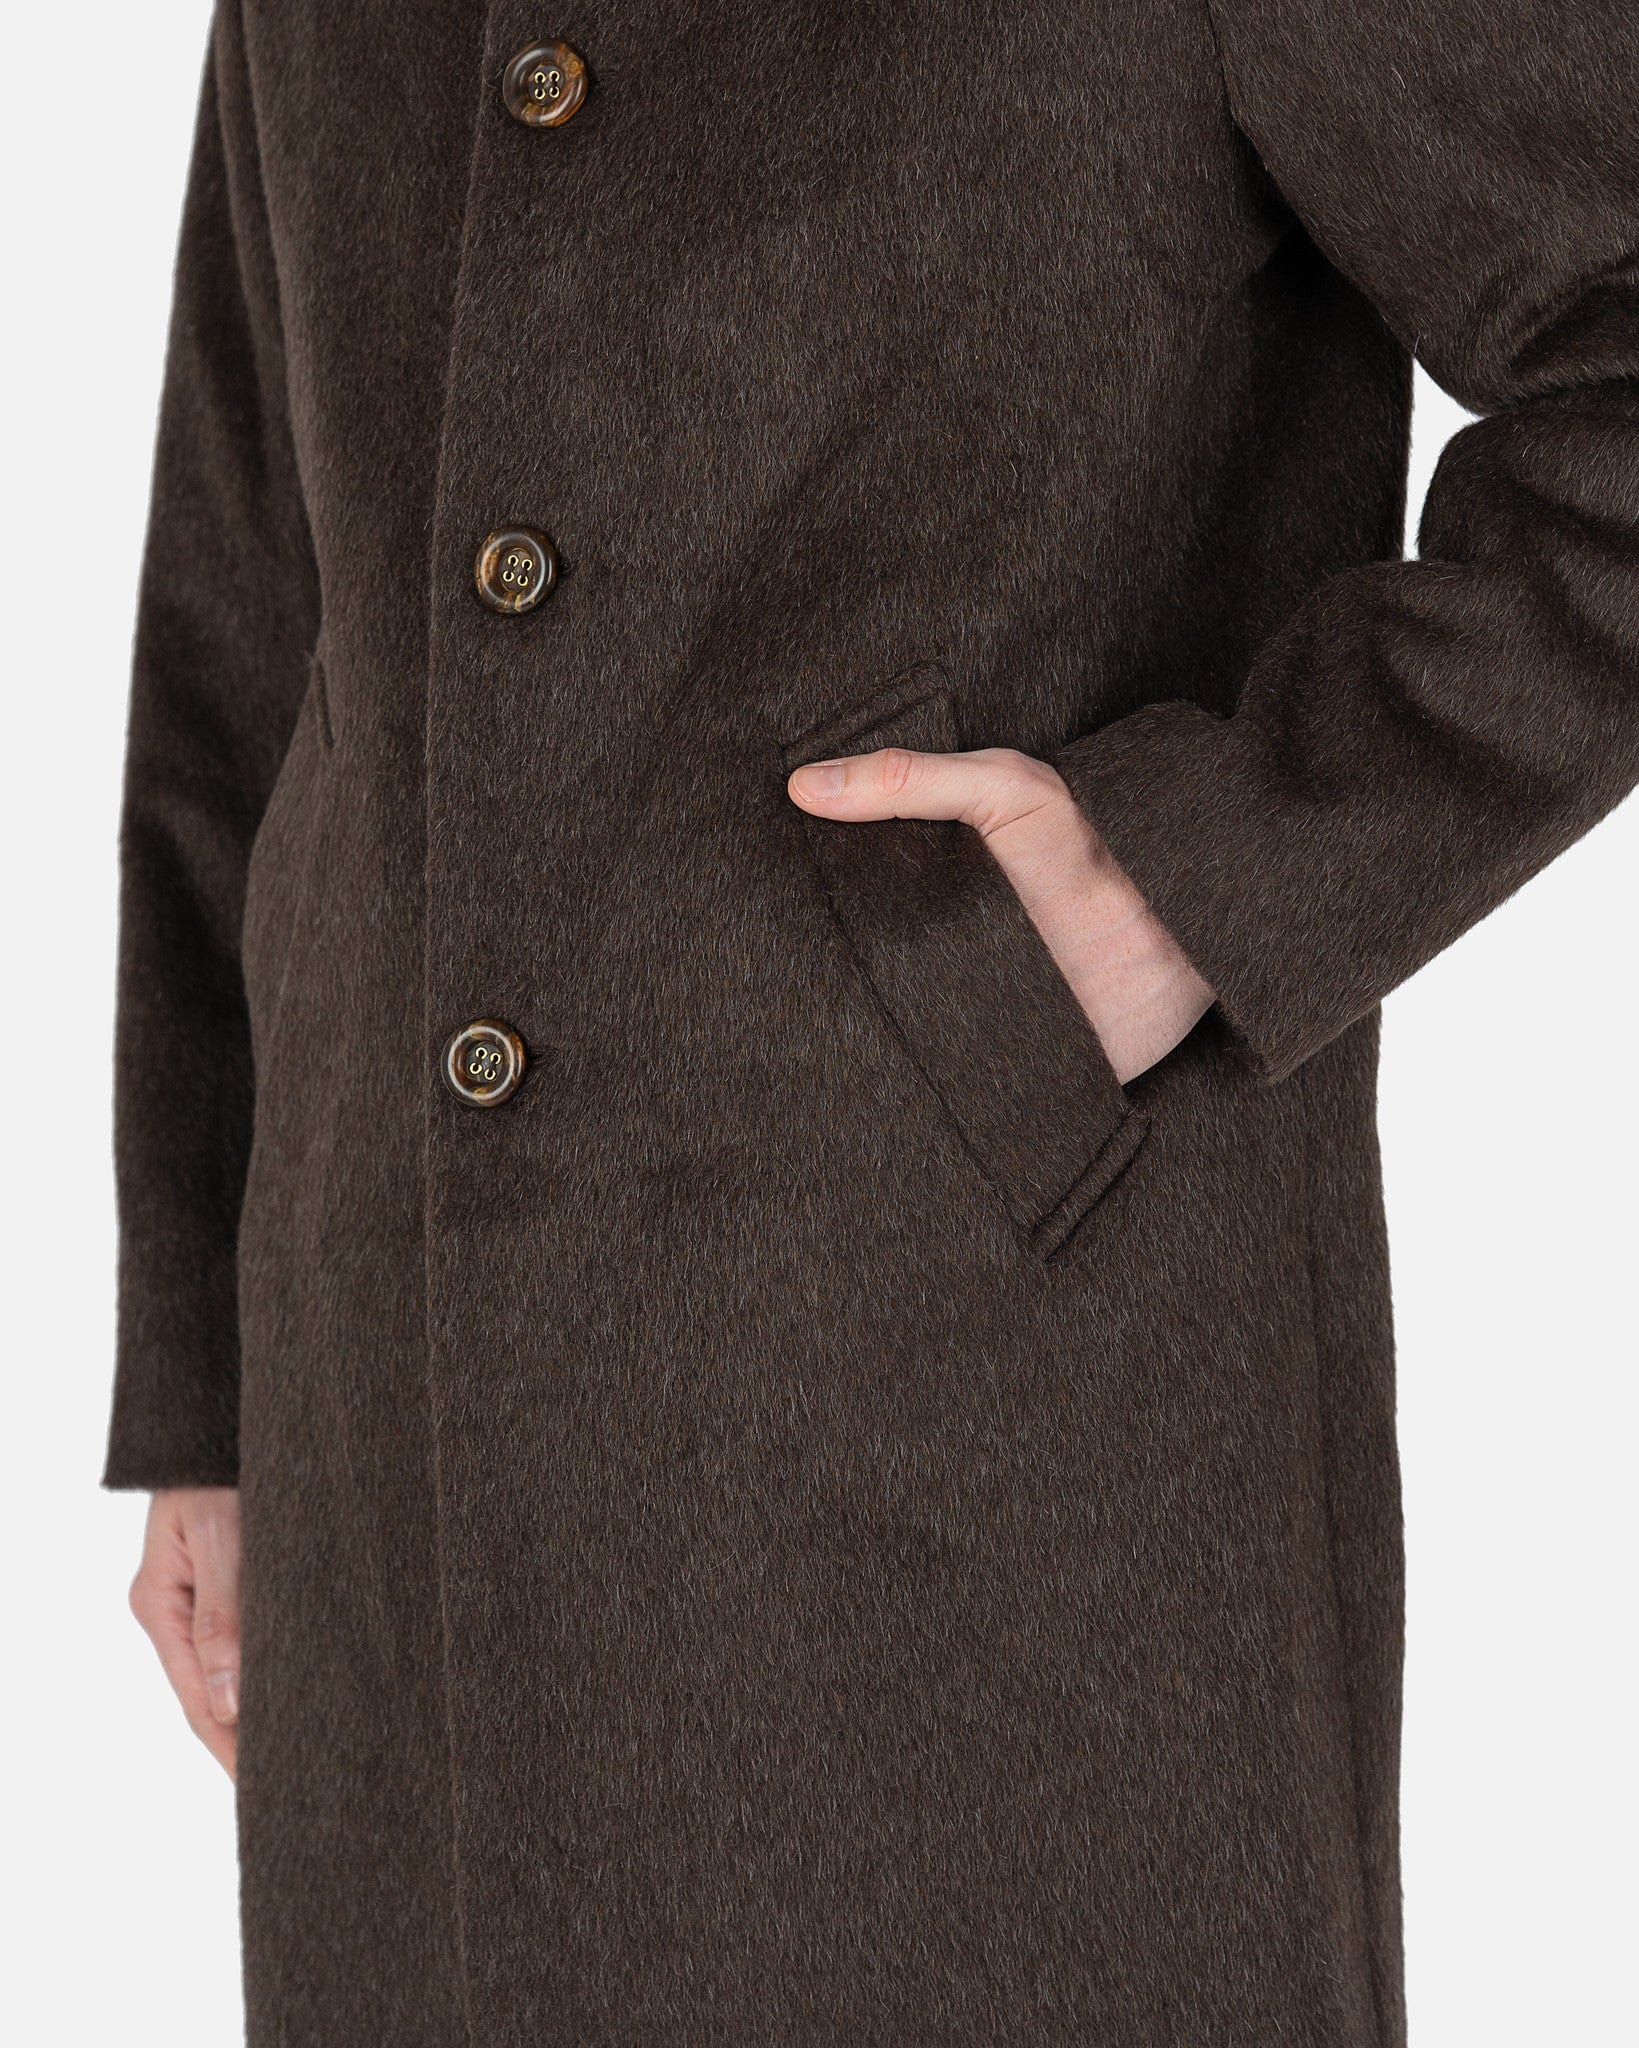 Esco Coat in Brown Mohair